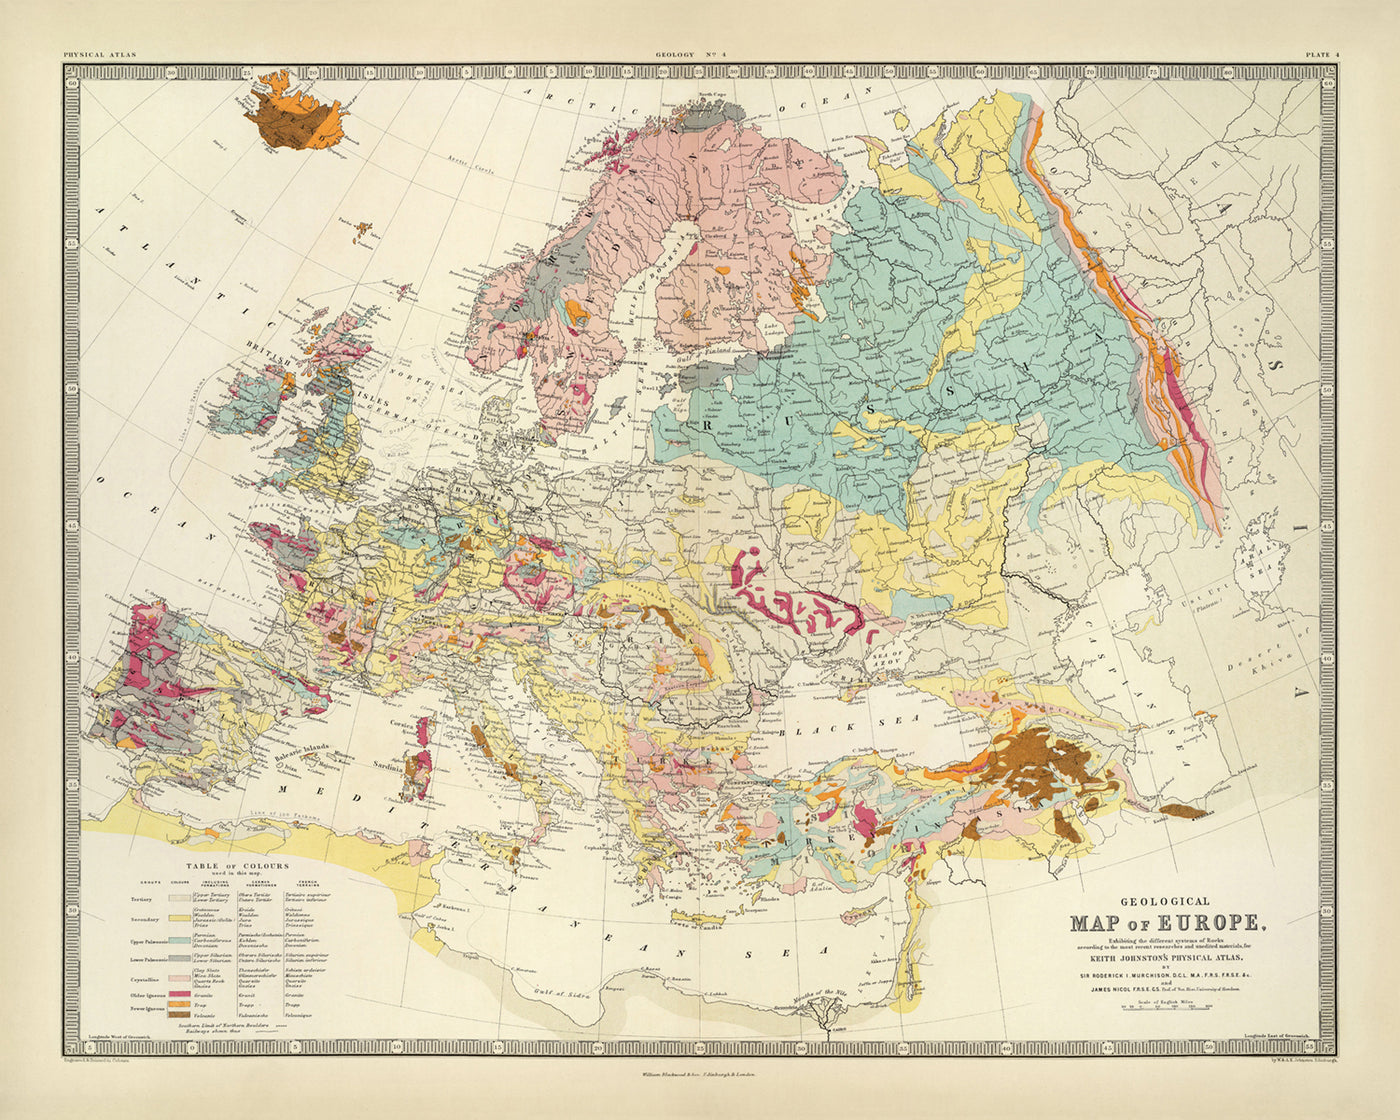 Alte geologische Karte von Europa von AK Johnston, 1856: Geologische Karte von Bergen, Felsen, Schichten